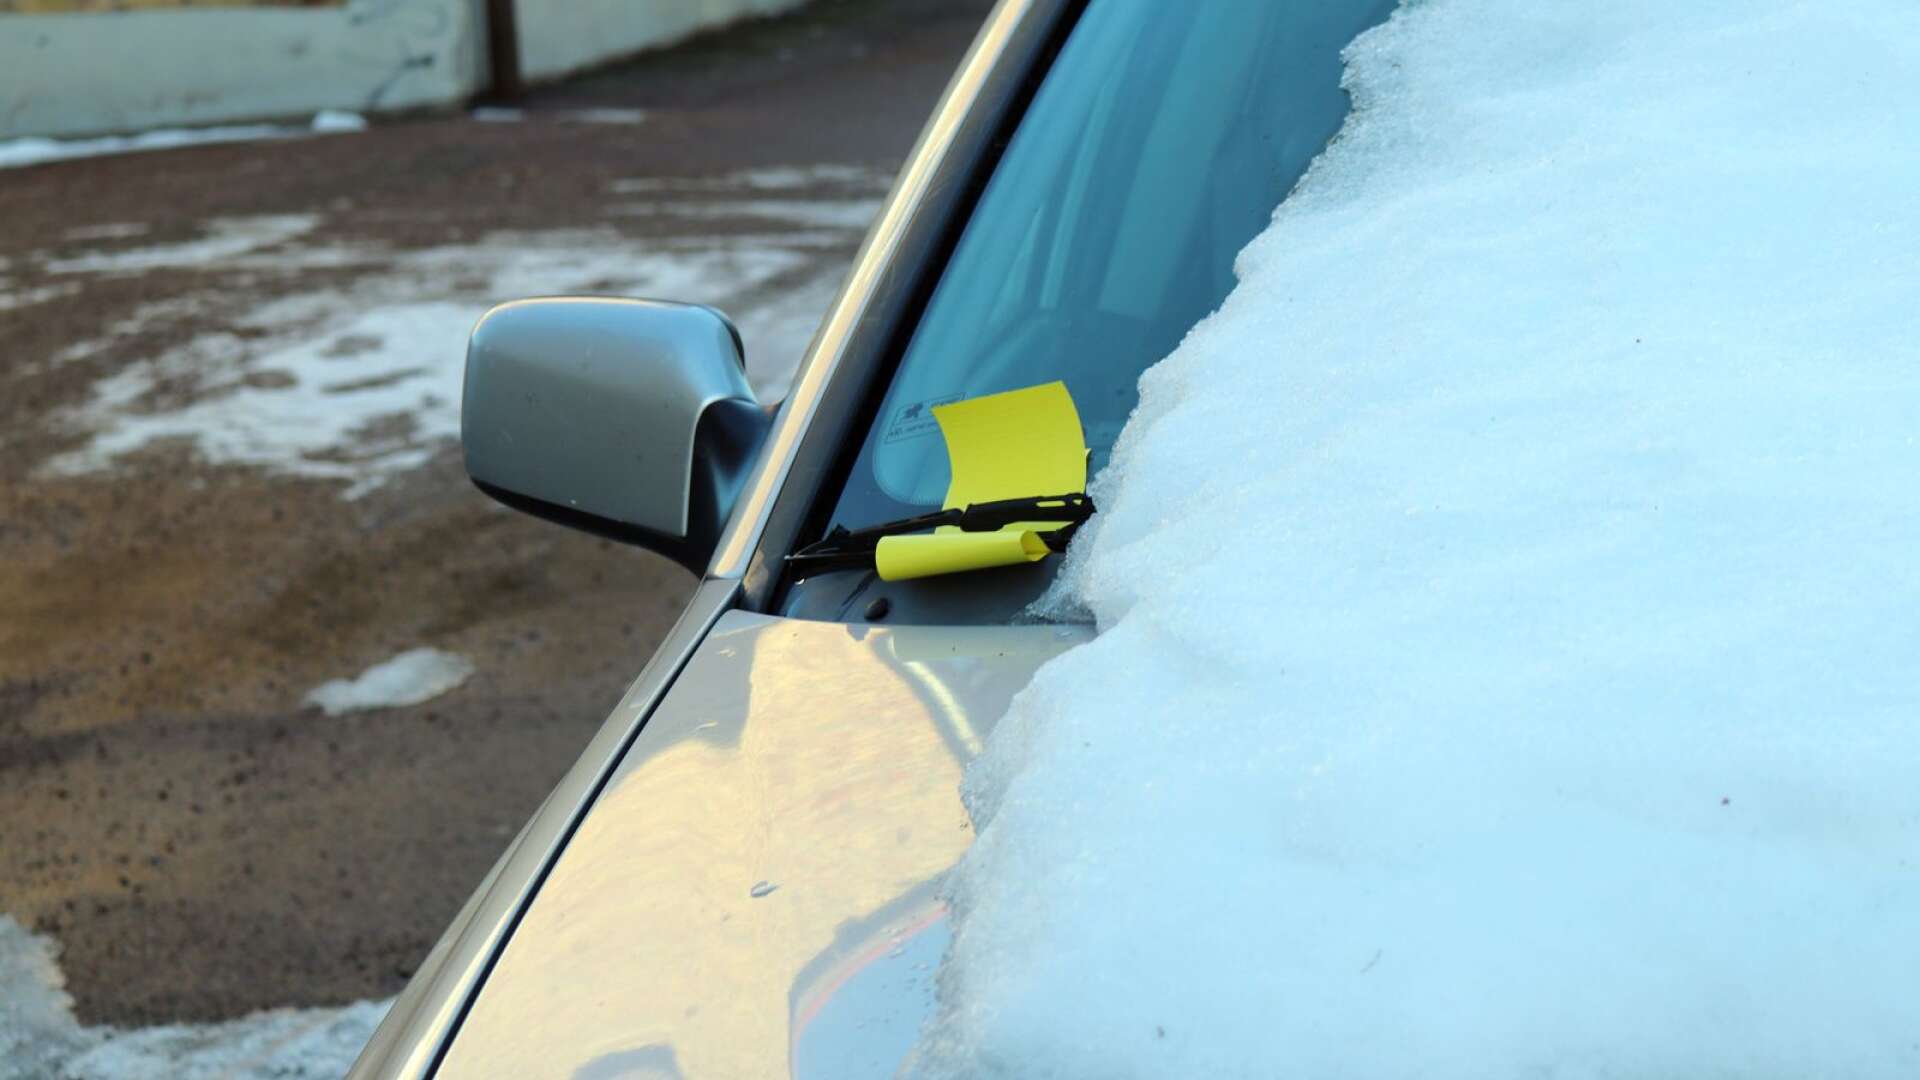 Inget kärleksbrev på rutan precis - ställer man sin bil felparkerad eller för länge på en p-plats, kan man bli lappad och få böta 500 eller 800 kronor.